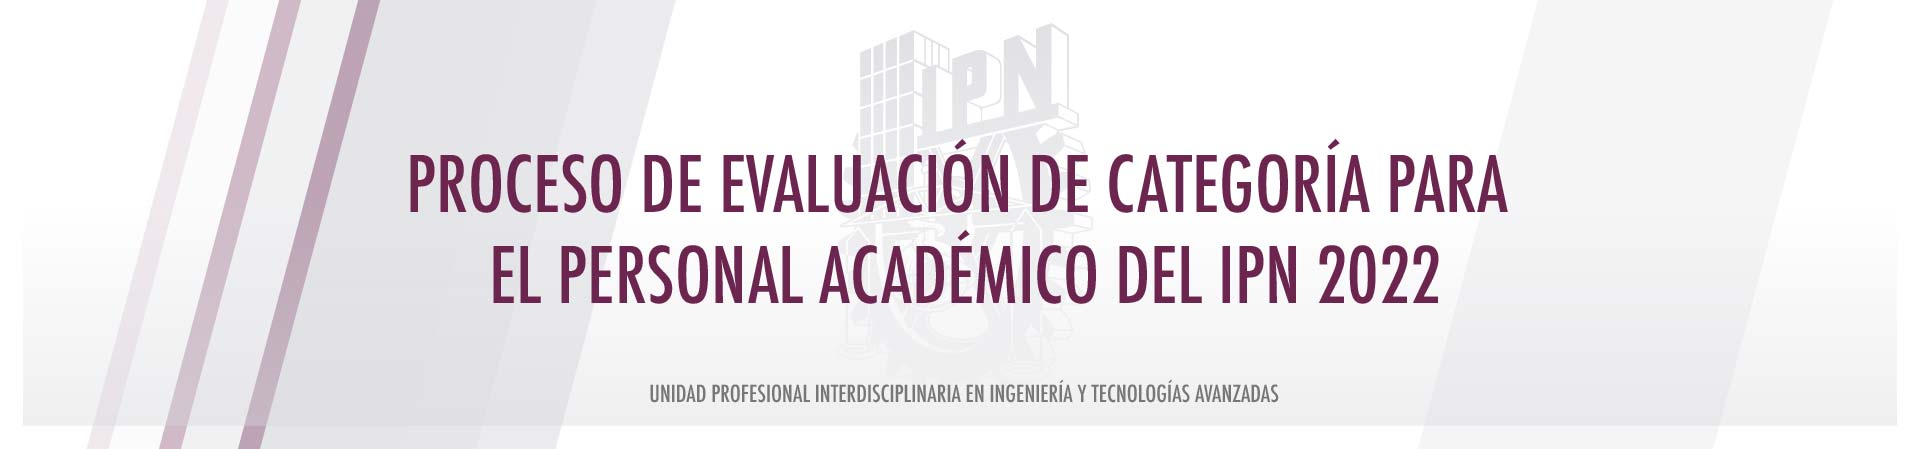 Proceso de Evaluación de Categoría para el Personal Académico del IPN 2022